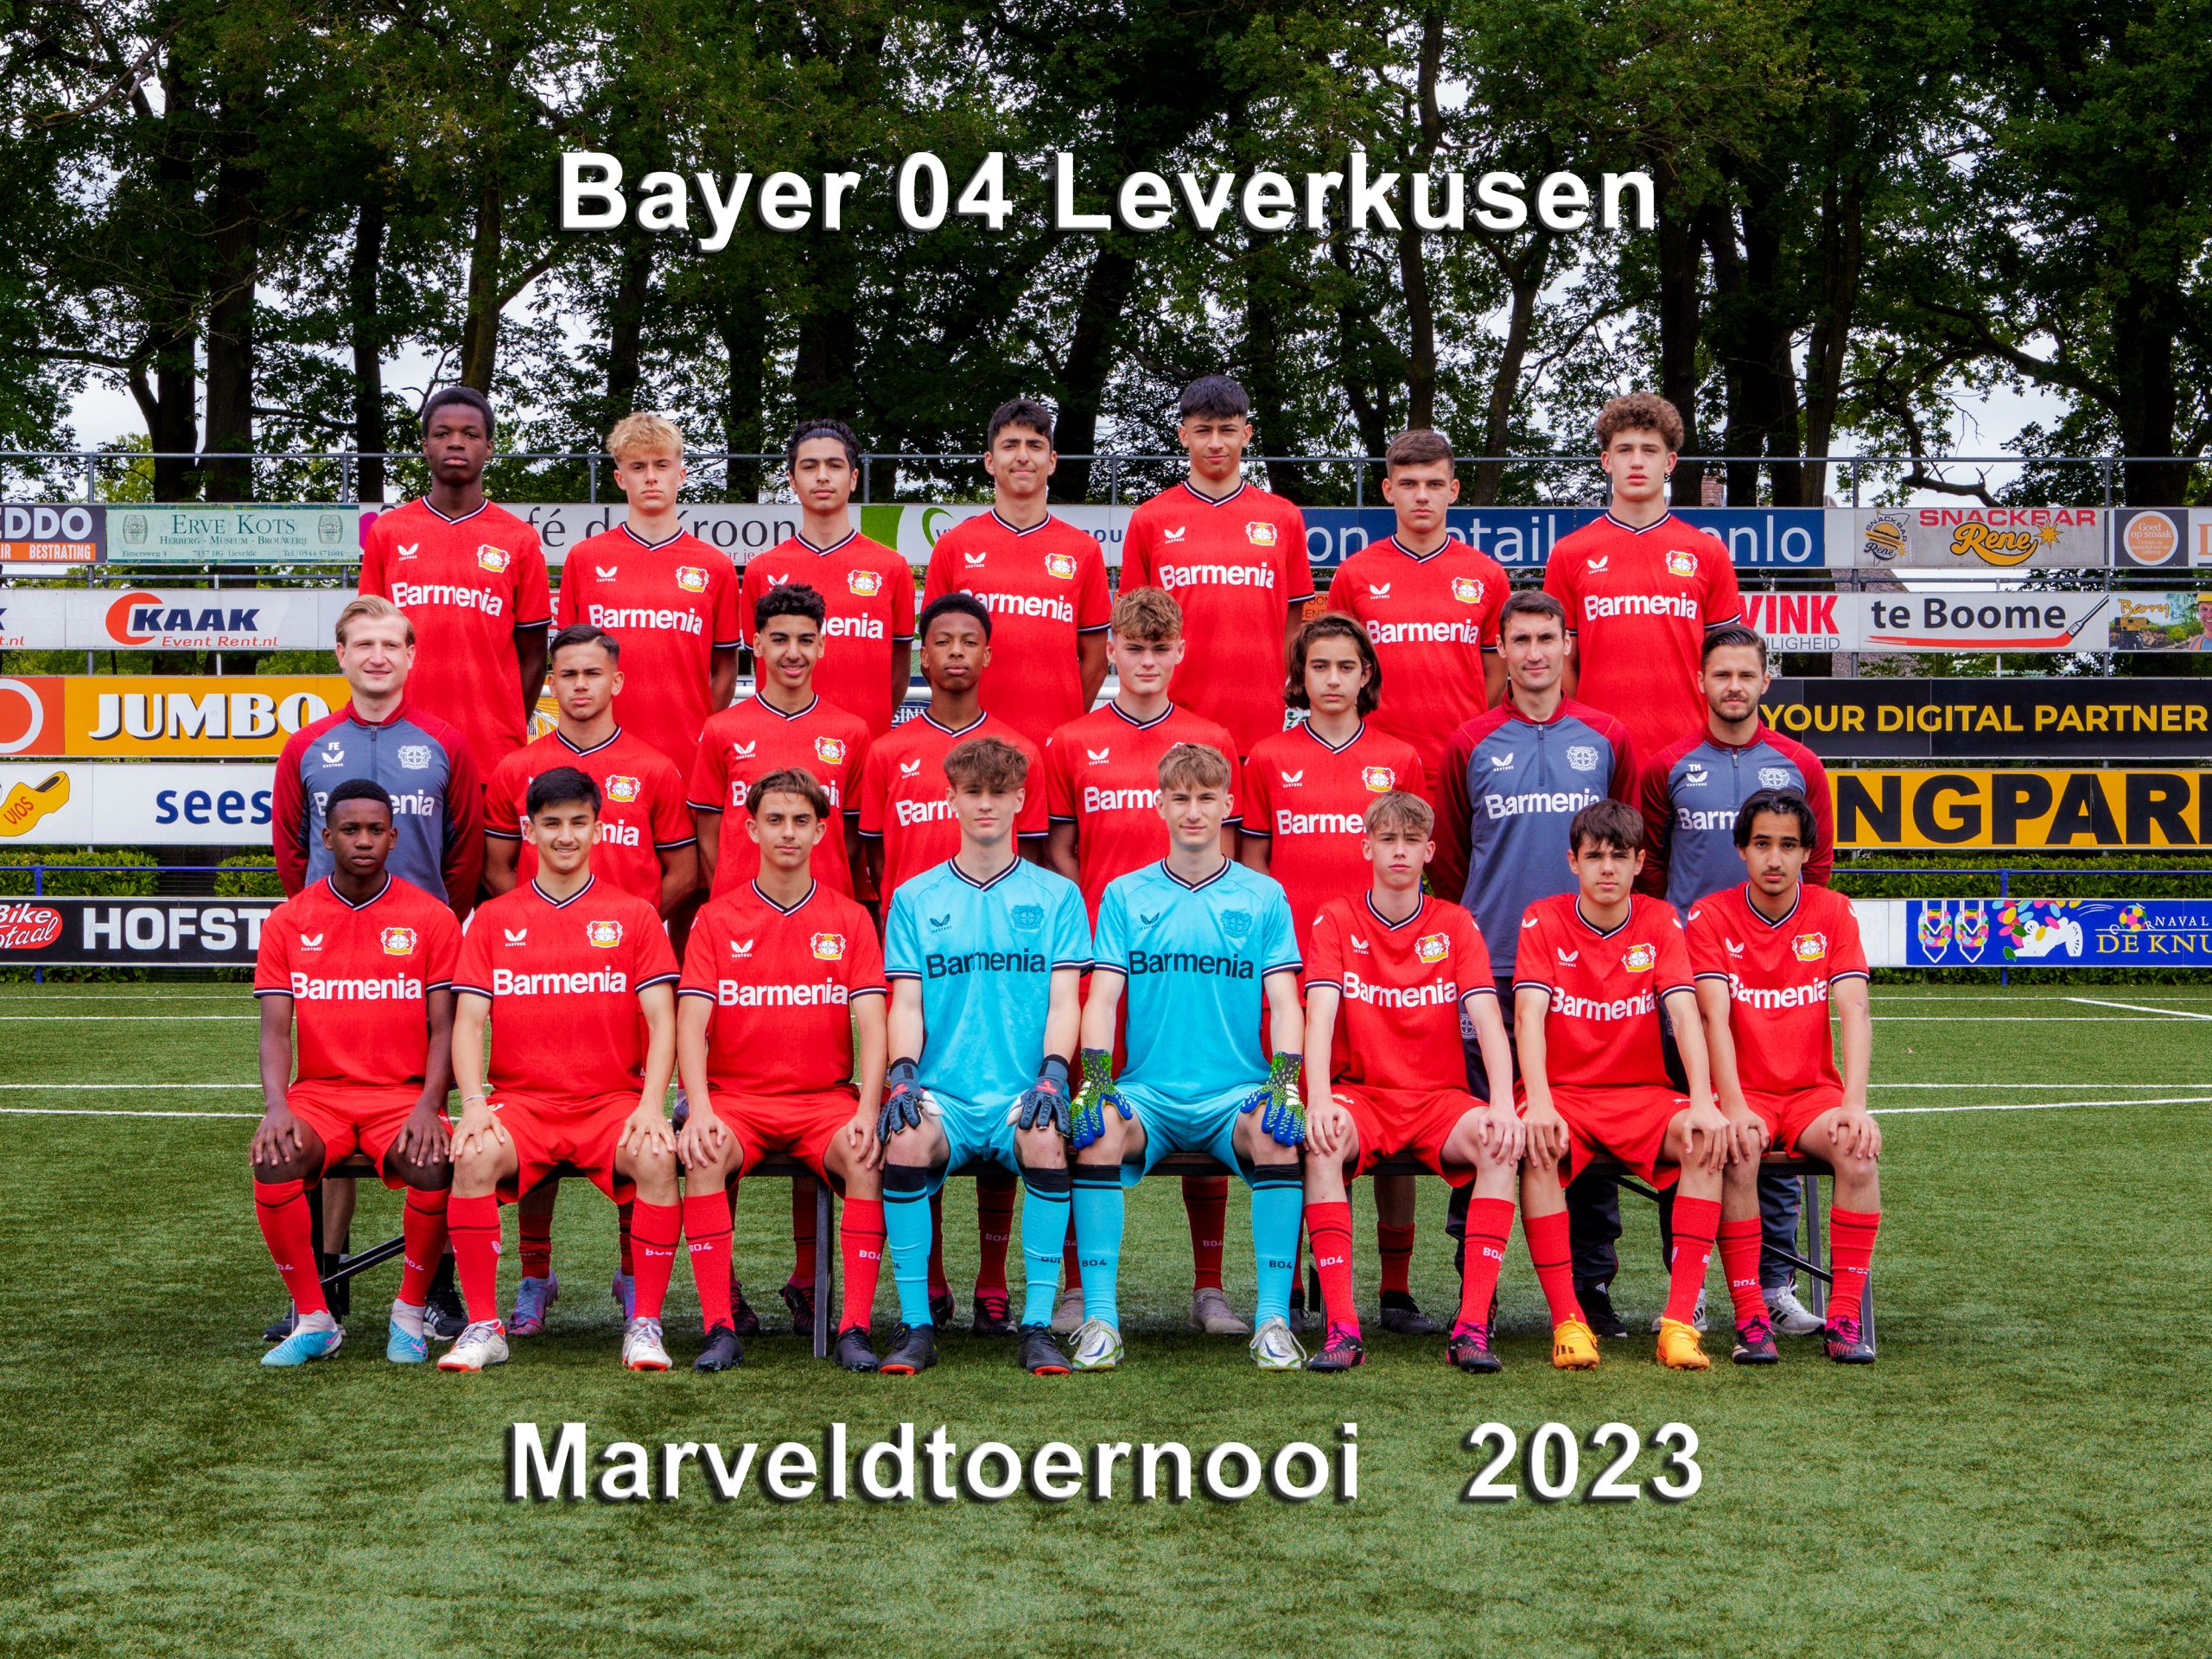 Marveld Tournament 2023 - Team Bayer 04 Leverkusen